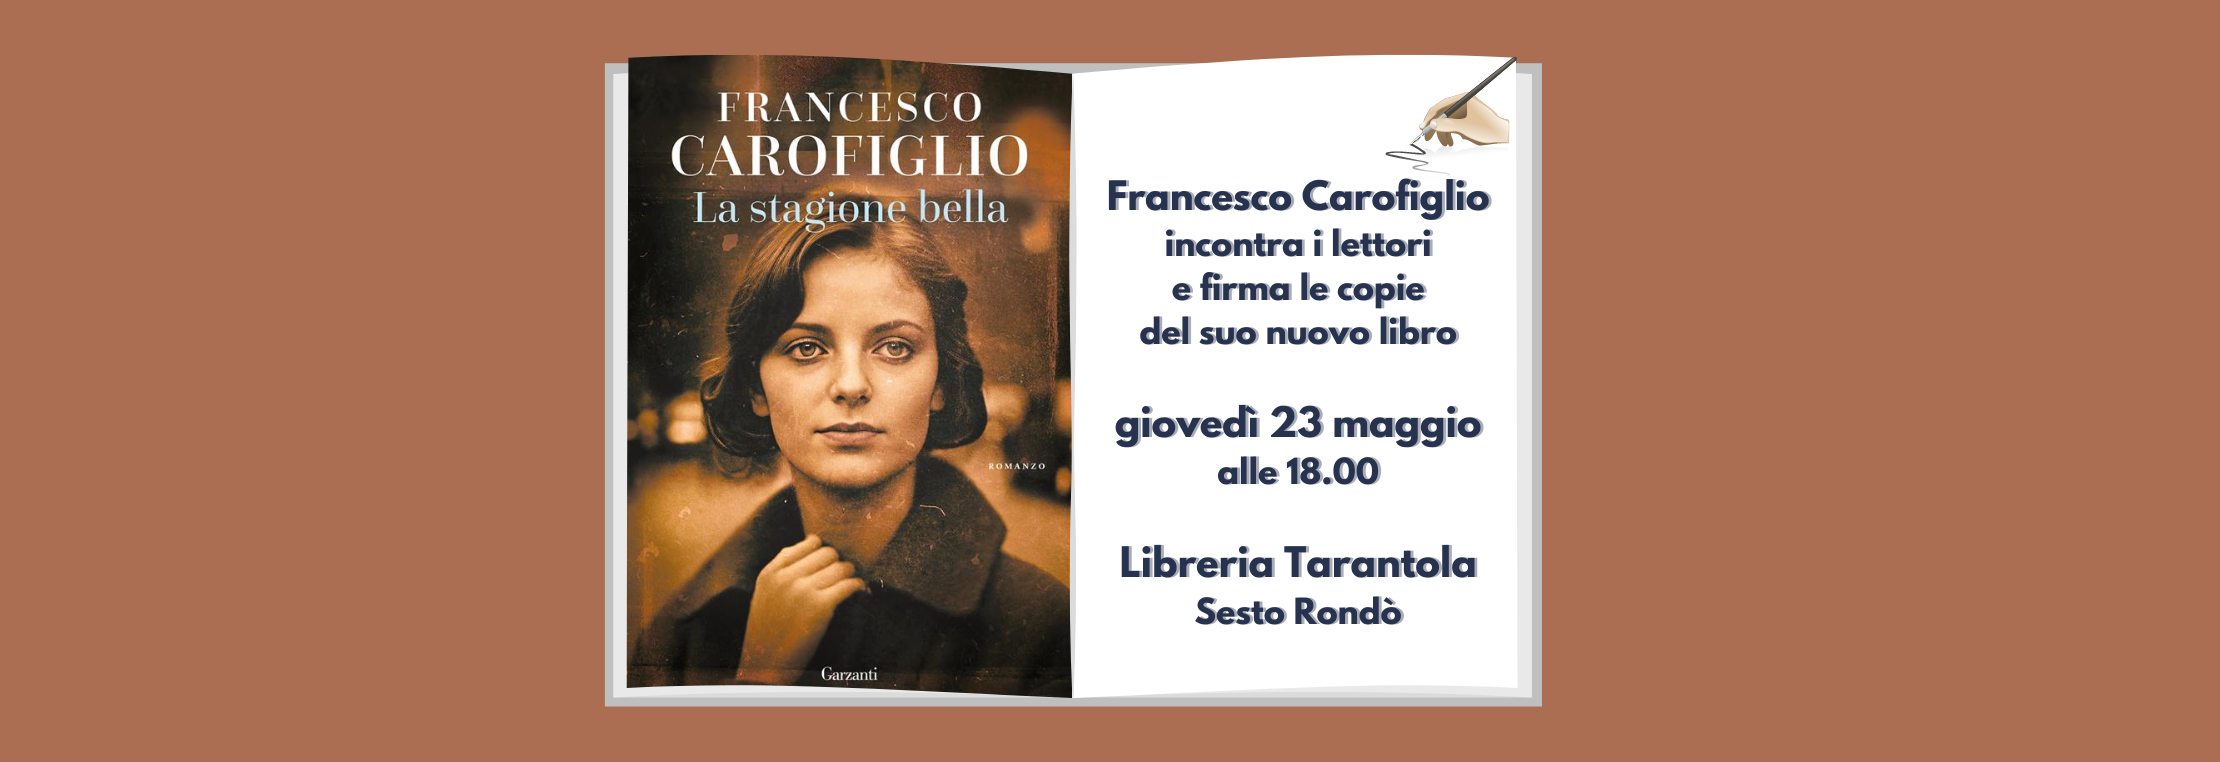 Francesco Carofiglio incontra i lettori alla libreria Tarantola